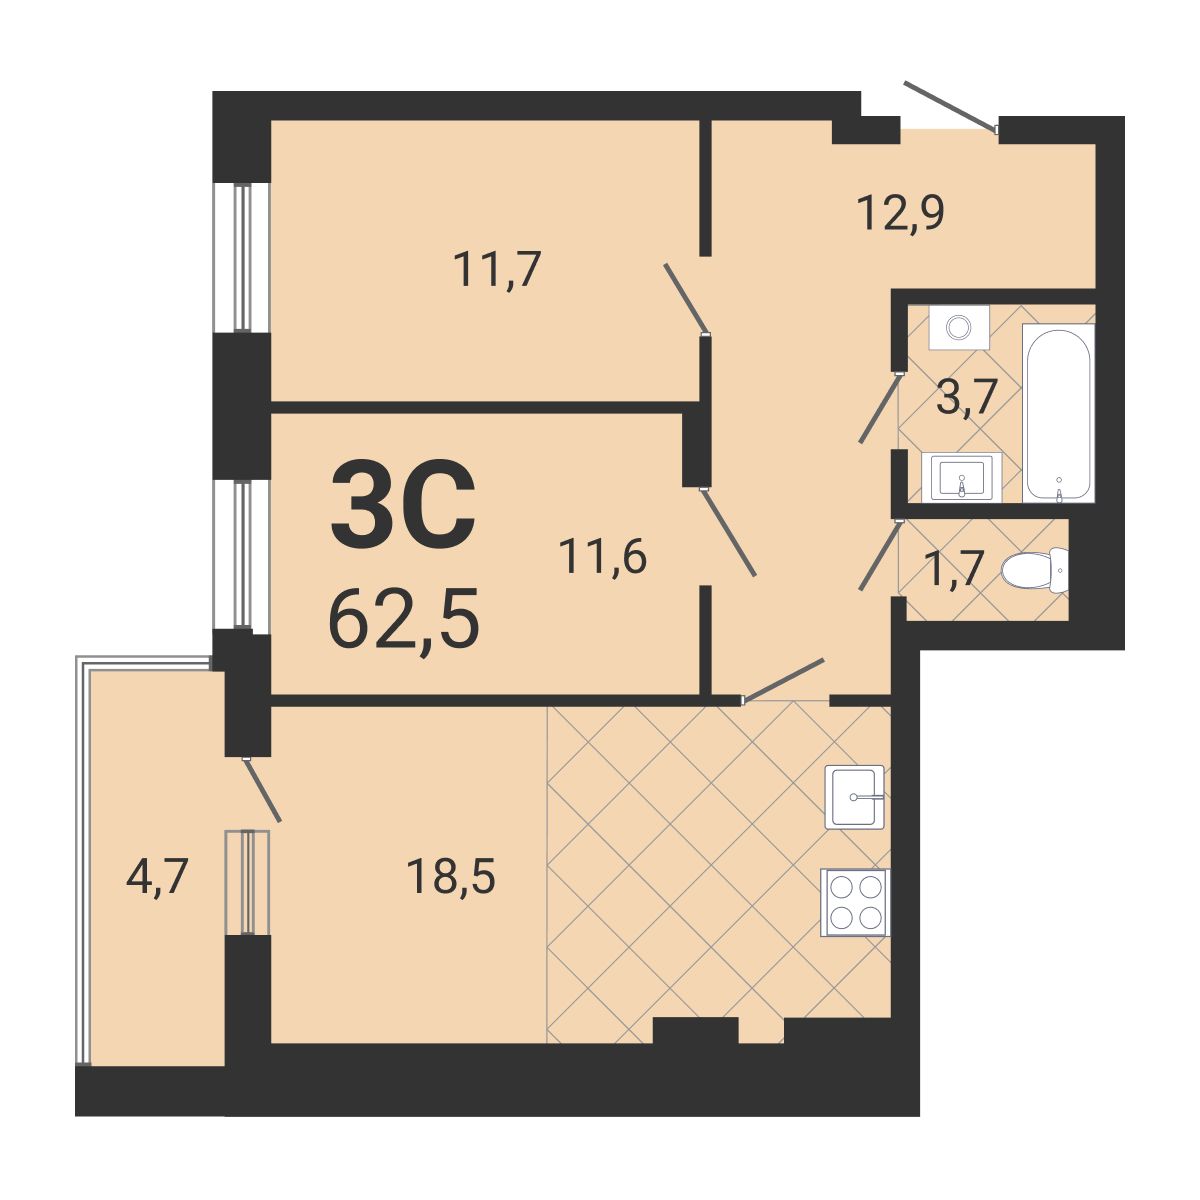 3-комнатная квартира 62.5м2 ЖК Тетрис